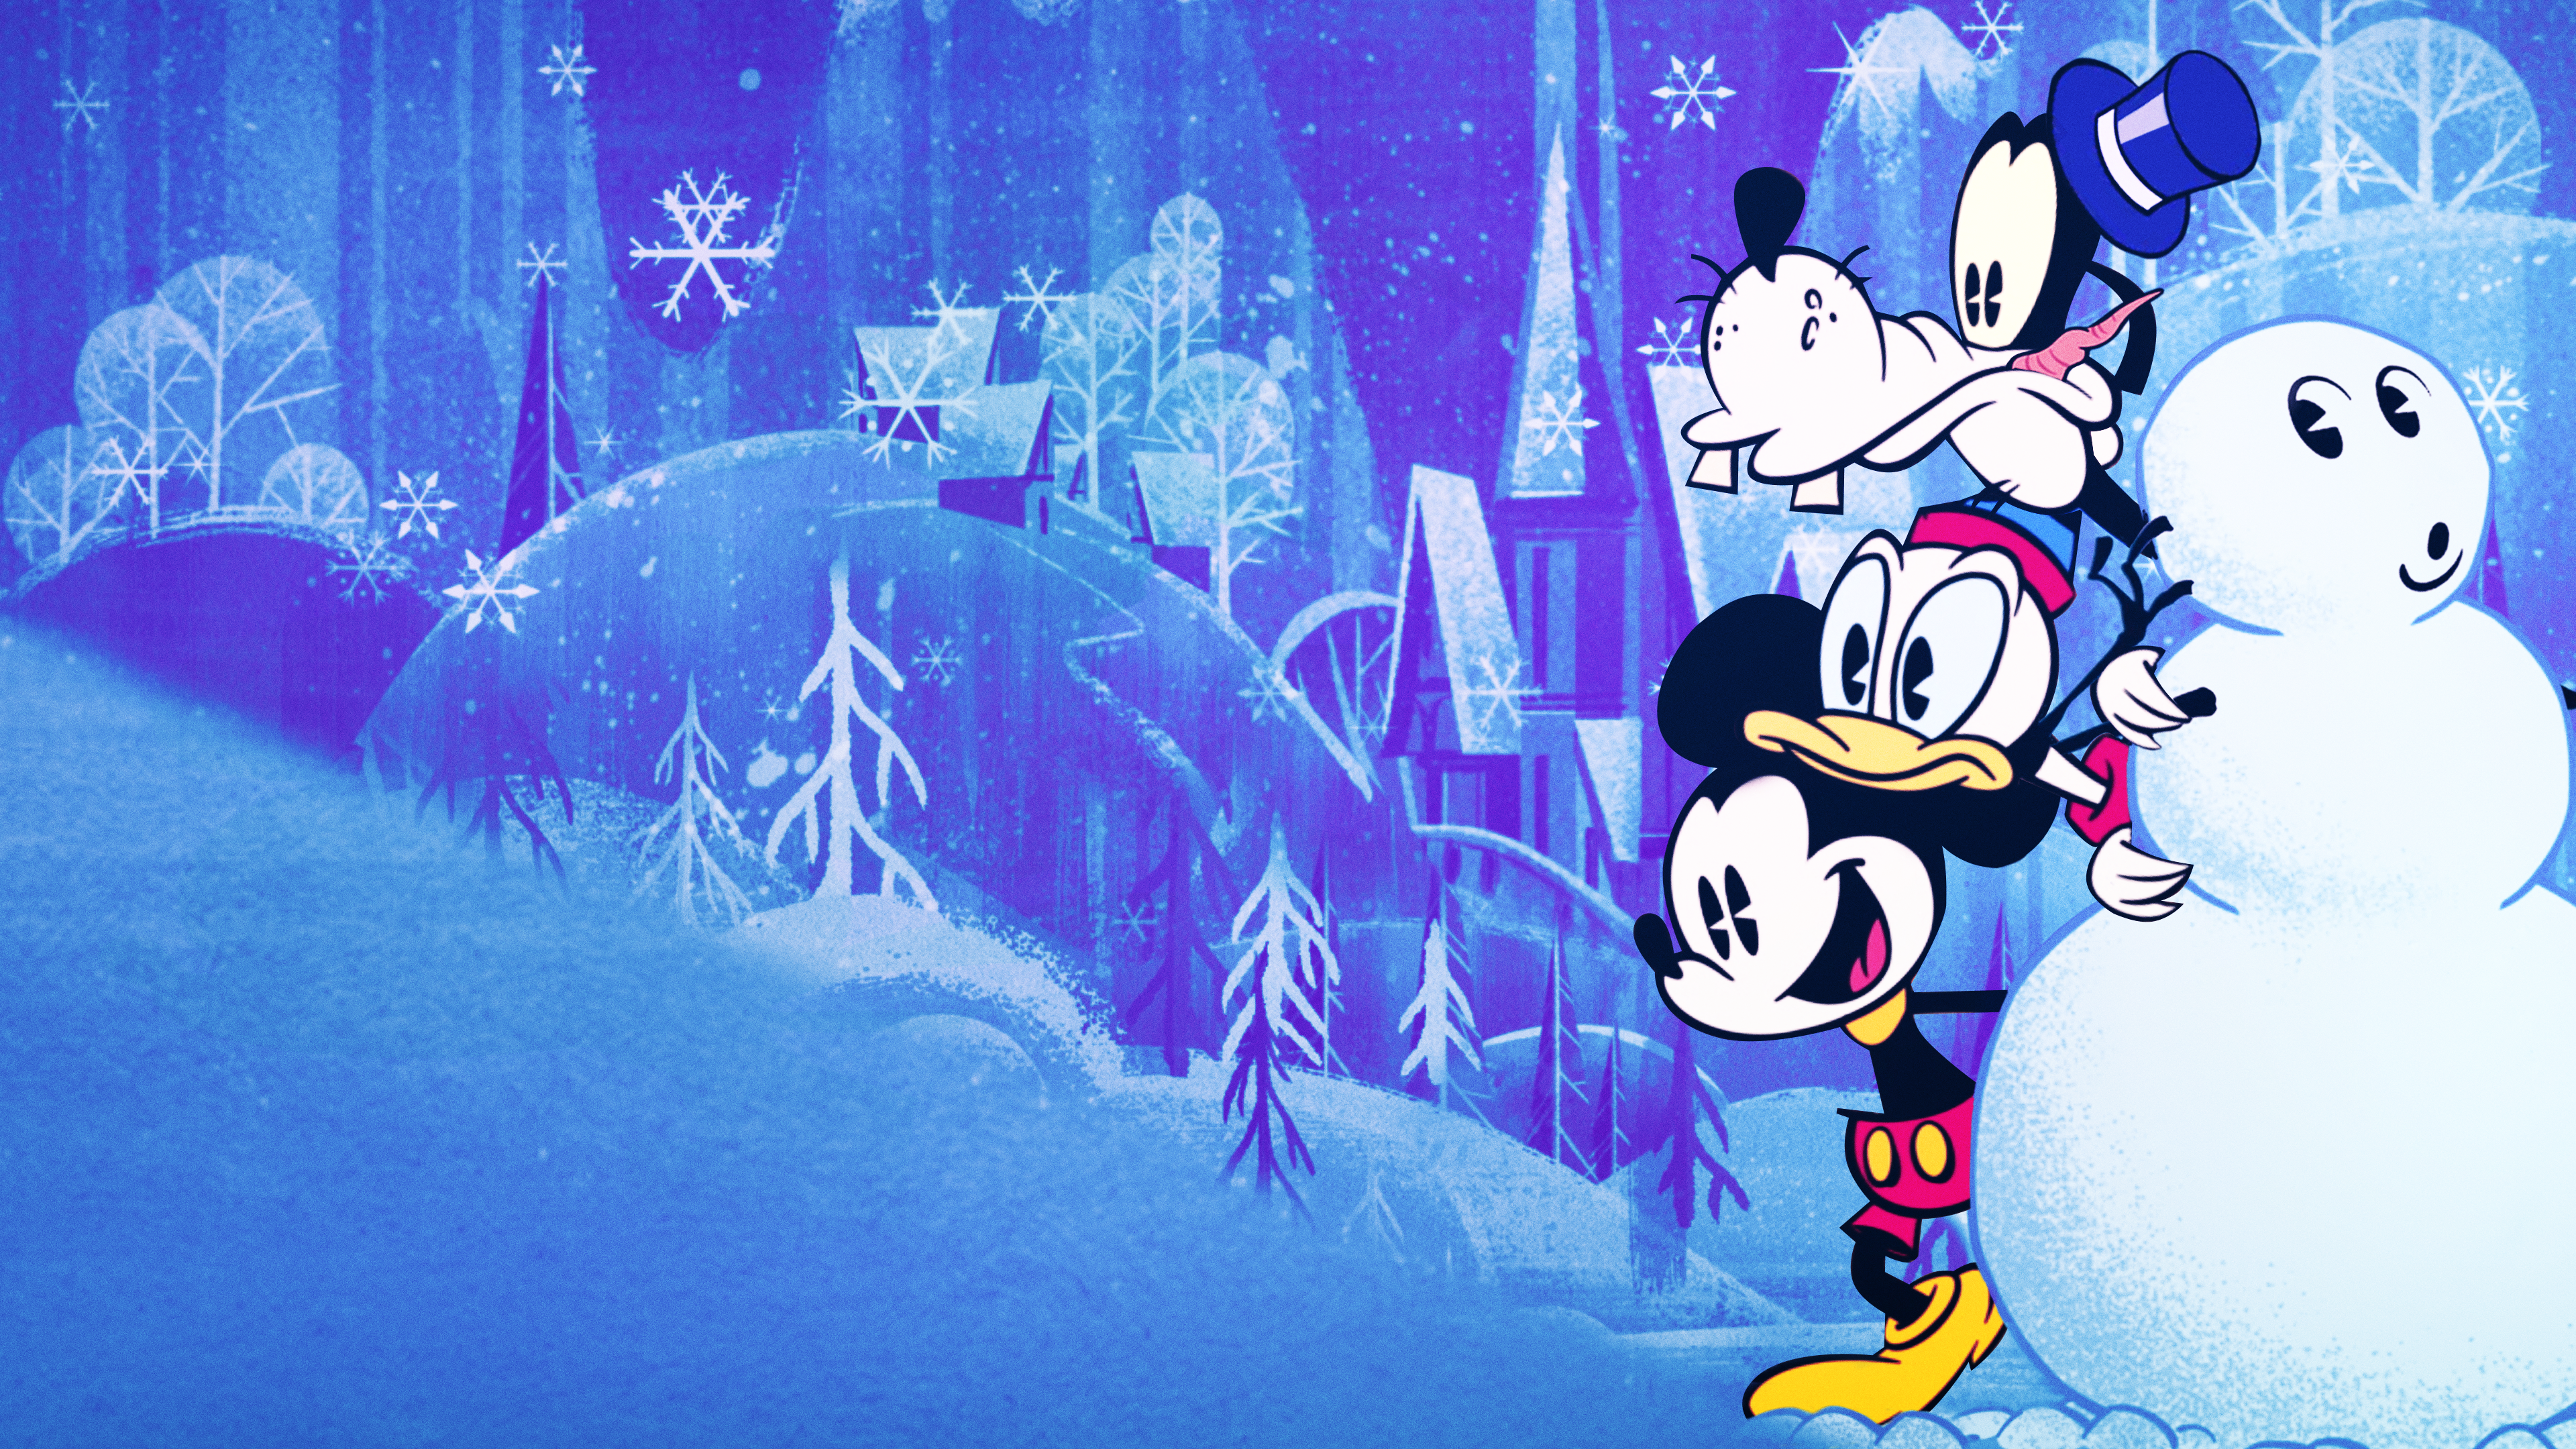 Mickey'nin Muhteşem Kışı